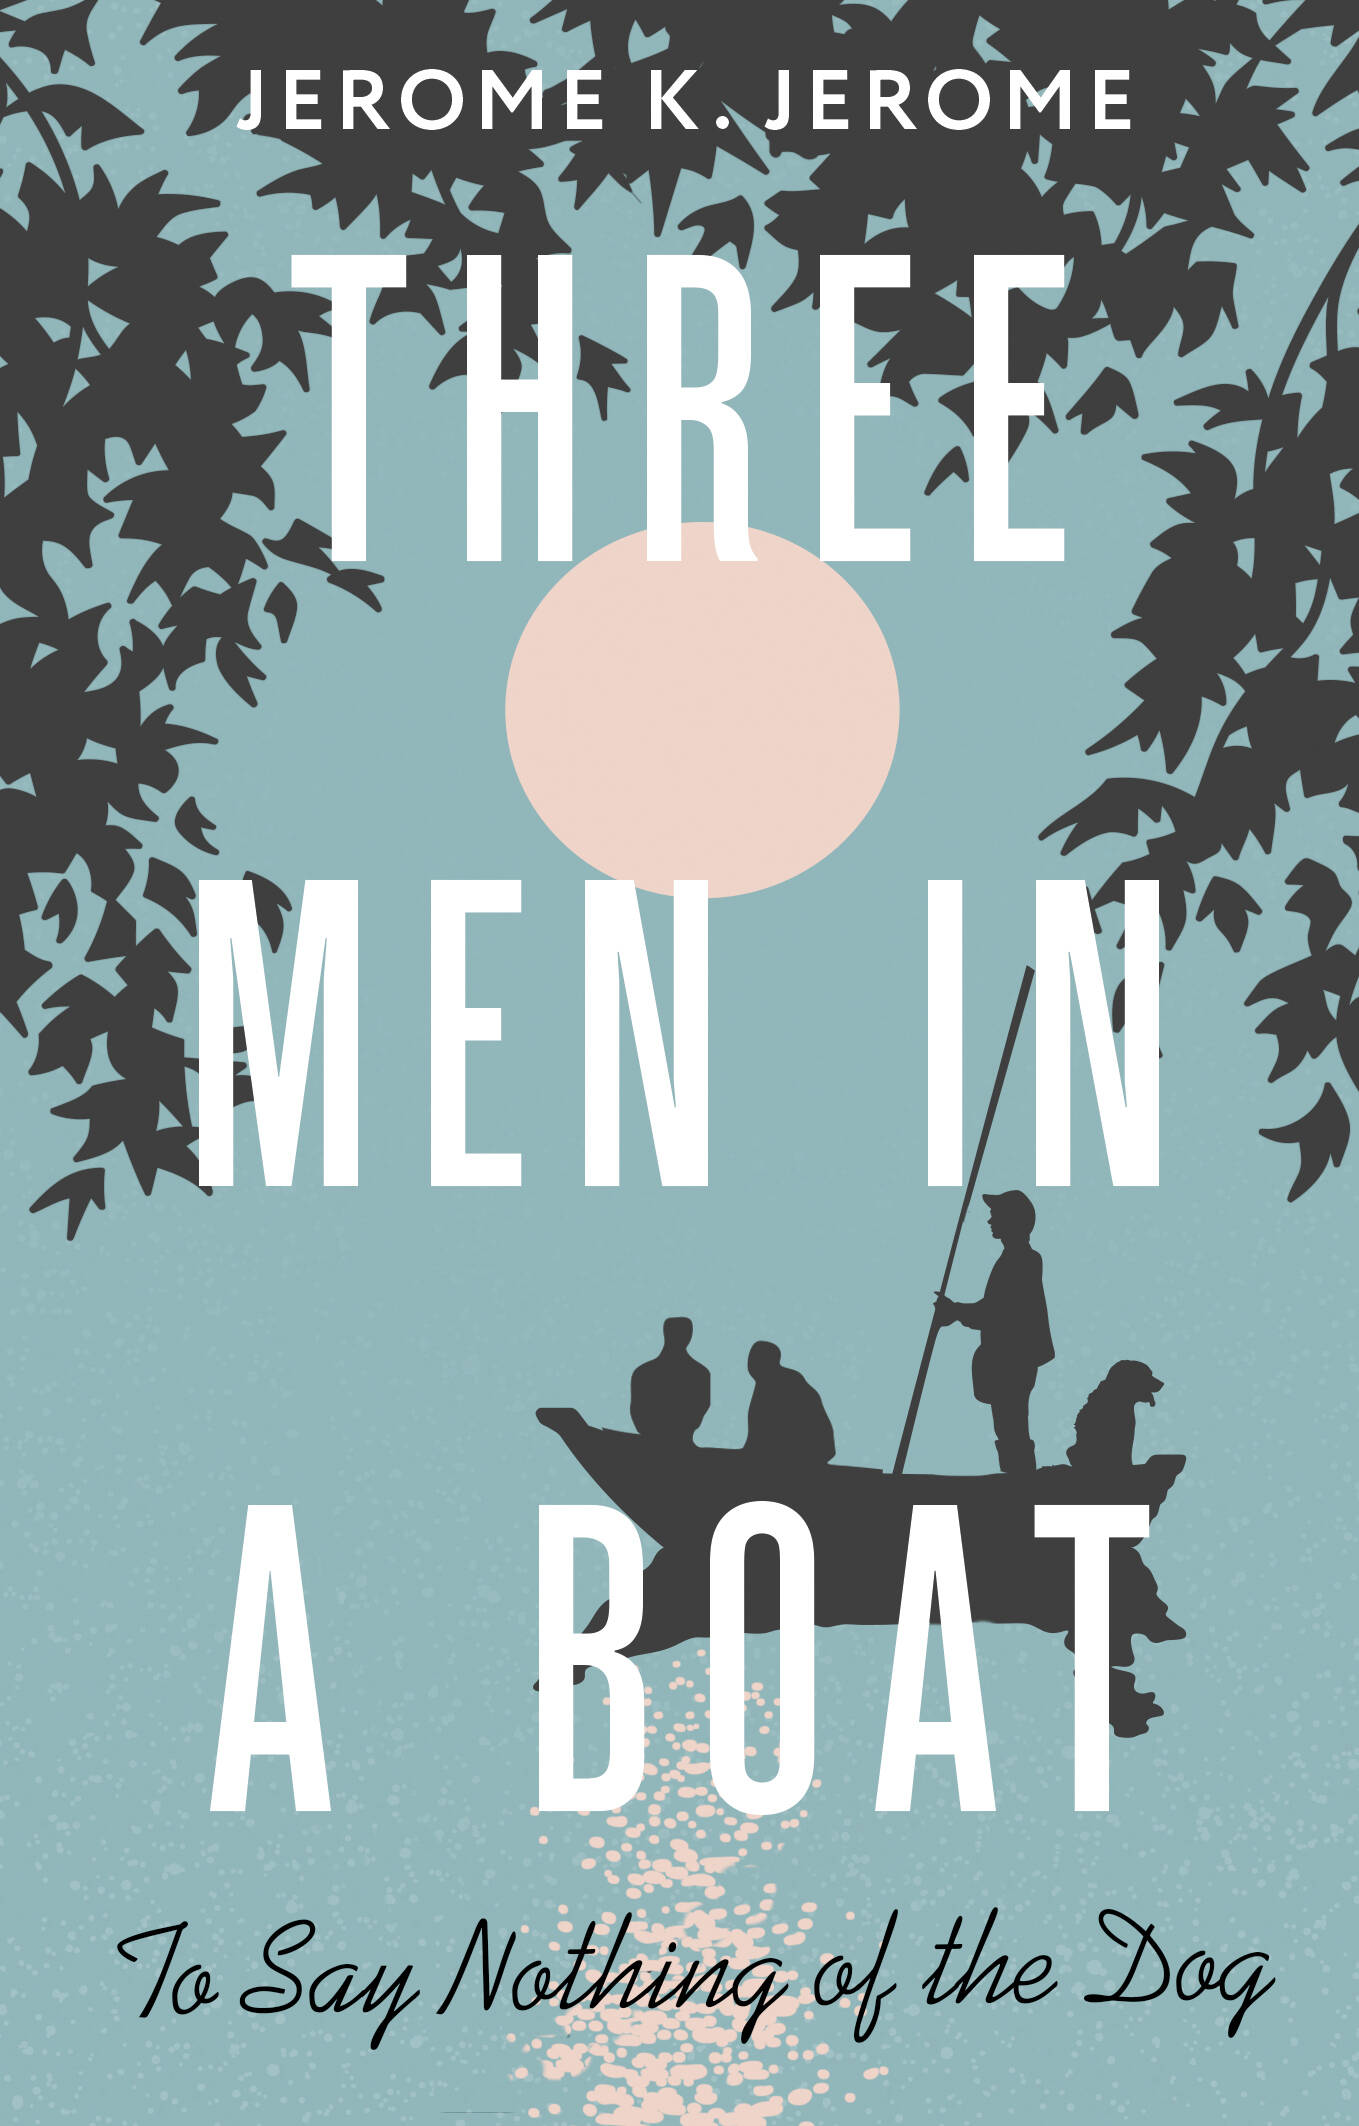 Джером Джером Клапка Three Men in a Boat (To say Nothing of the Dog) джером клапка джером three men in a boat to say nothing of the dog